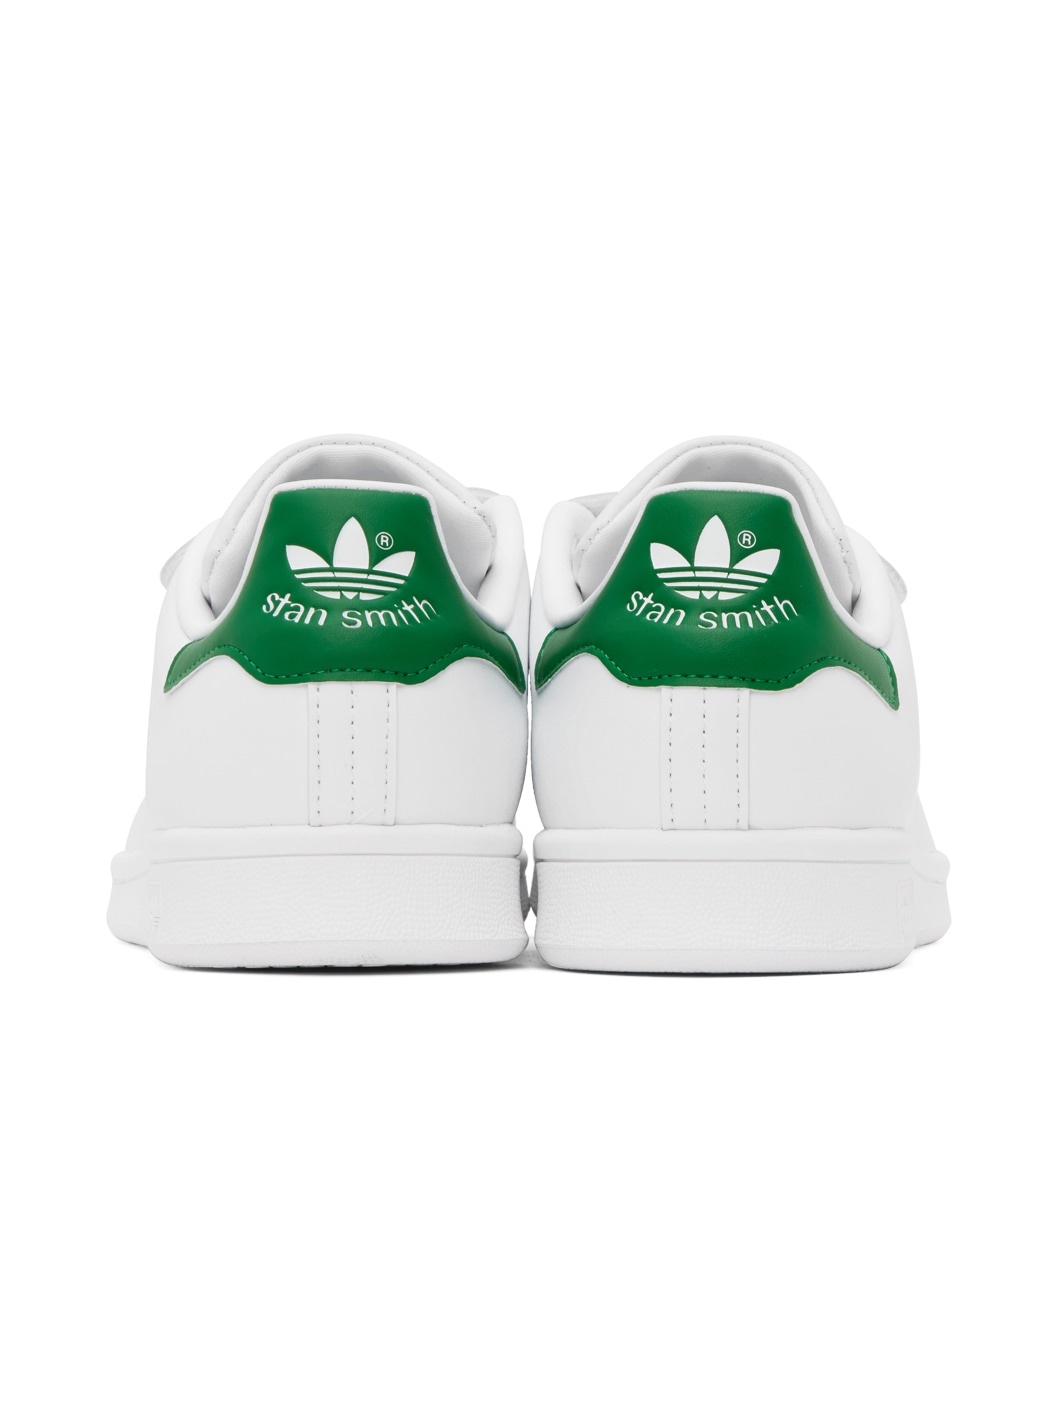 White Stan Smith Sneakers - 2